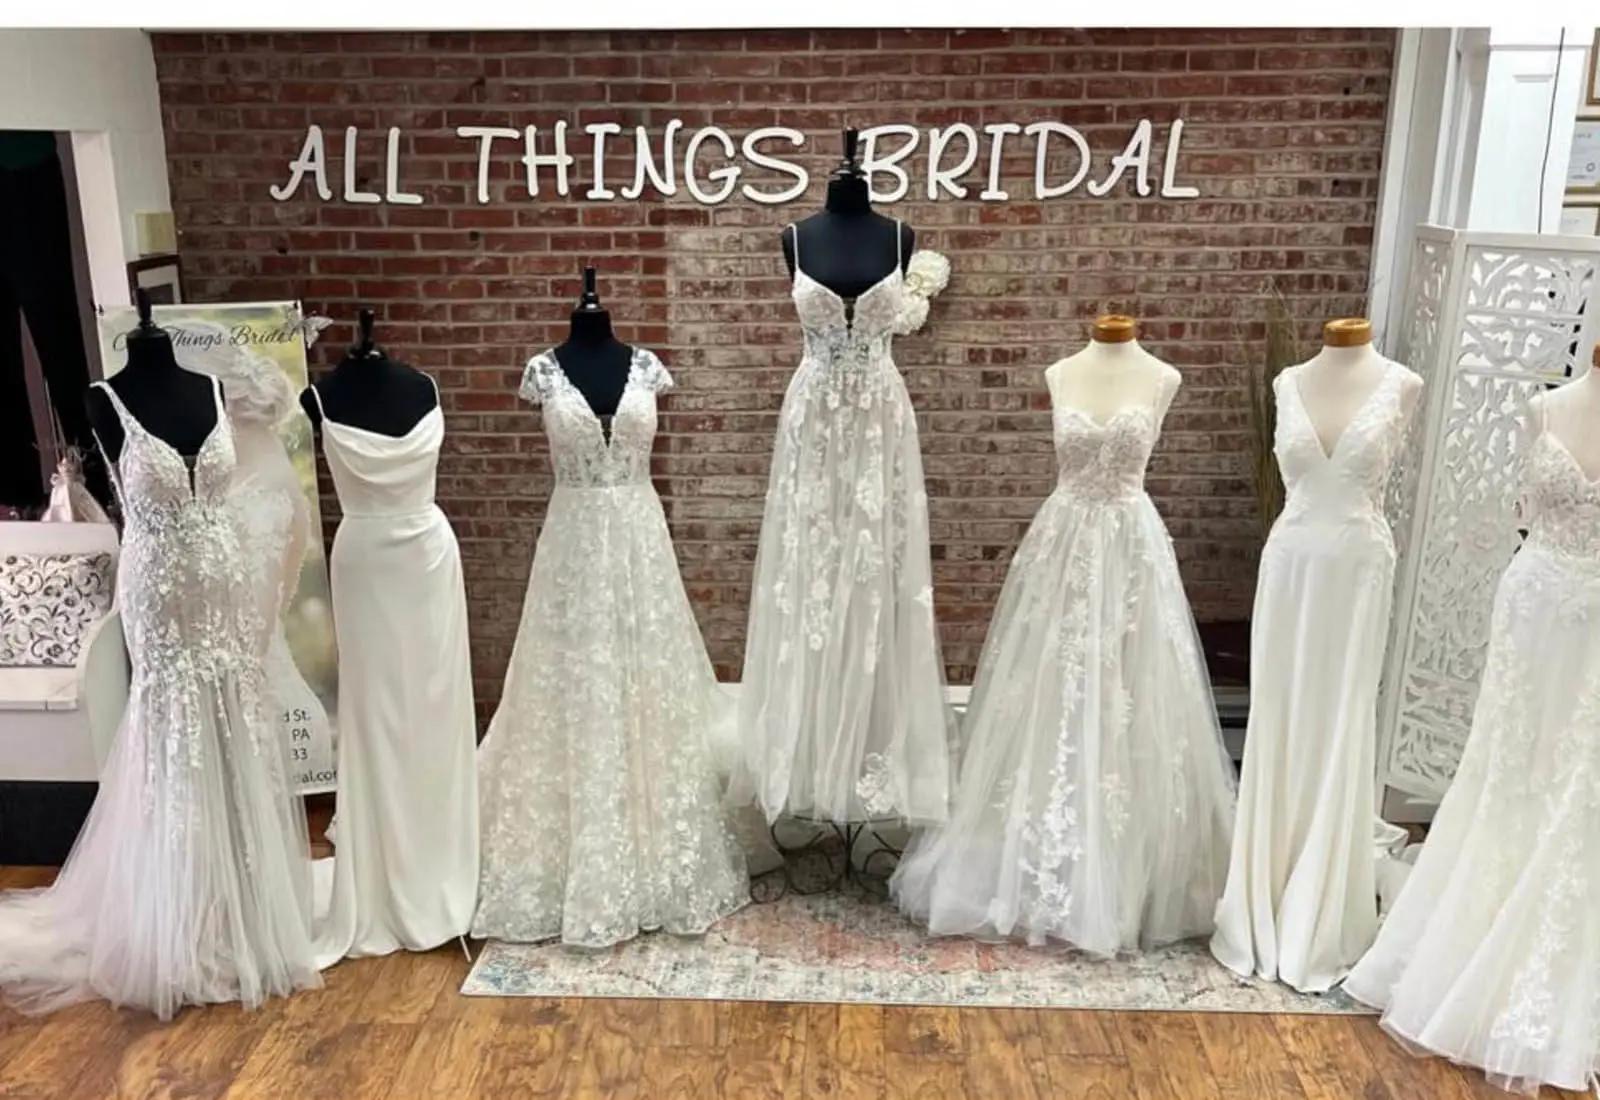 All Things Bridal